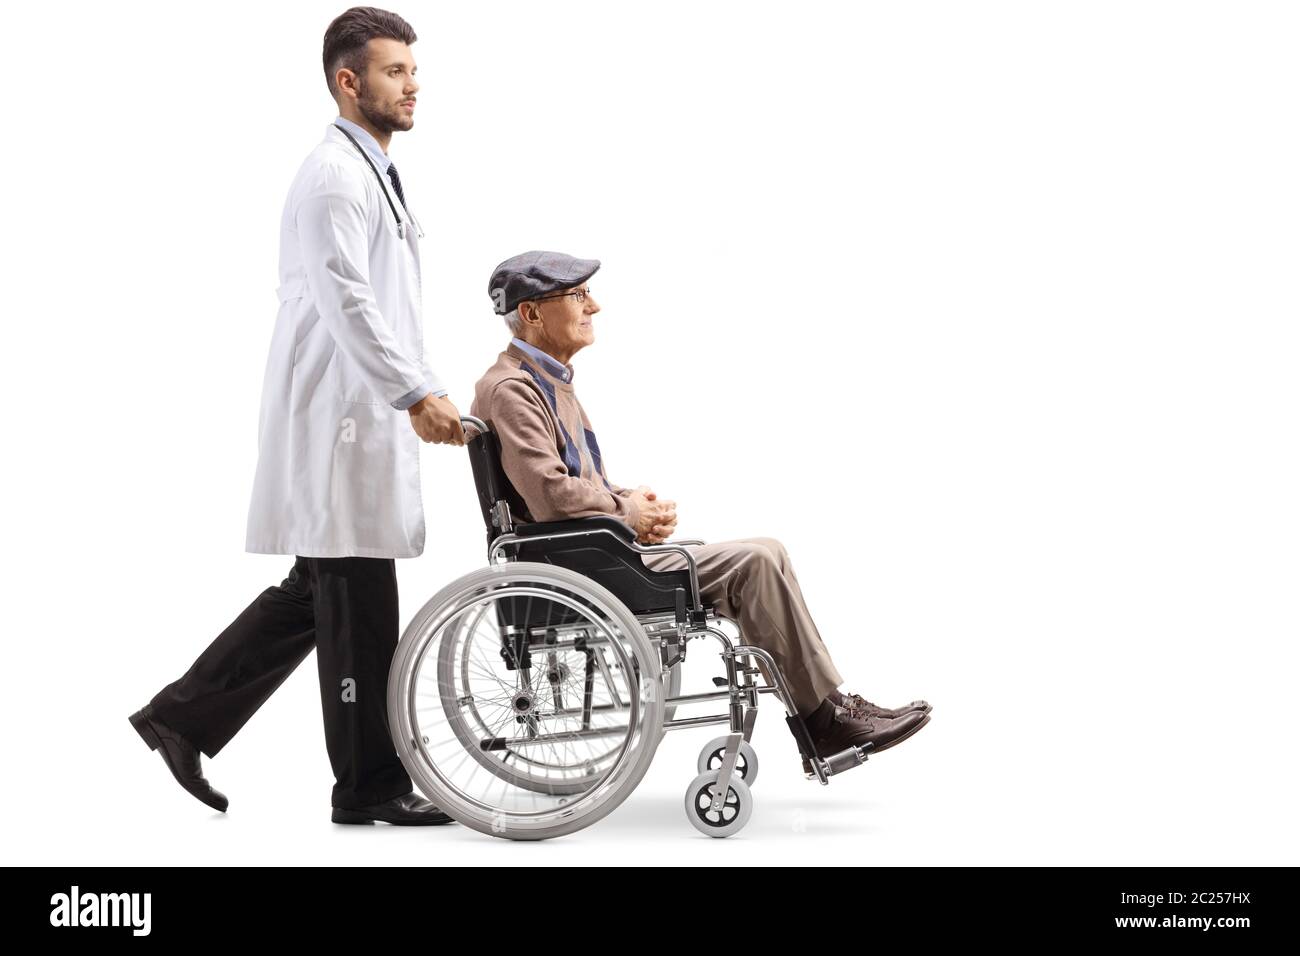 Jeune médecin de sexe masculin poussant un patient âgé handicapé dans un fauteuil roulant isolé sur fond blanc Banque D'Images